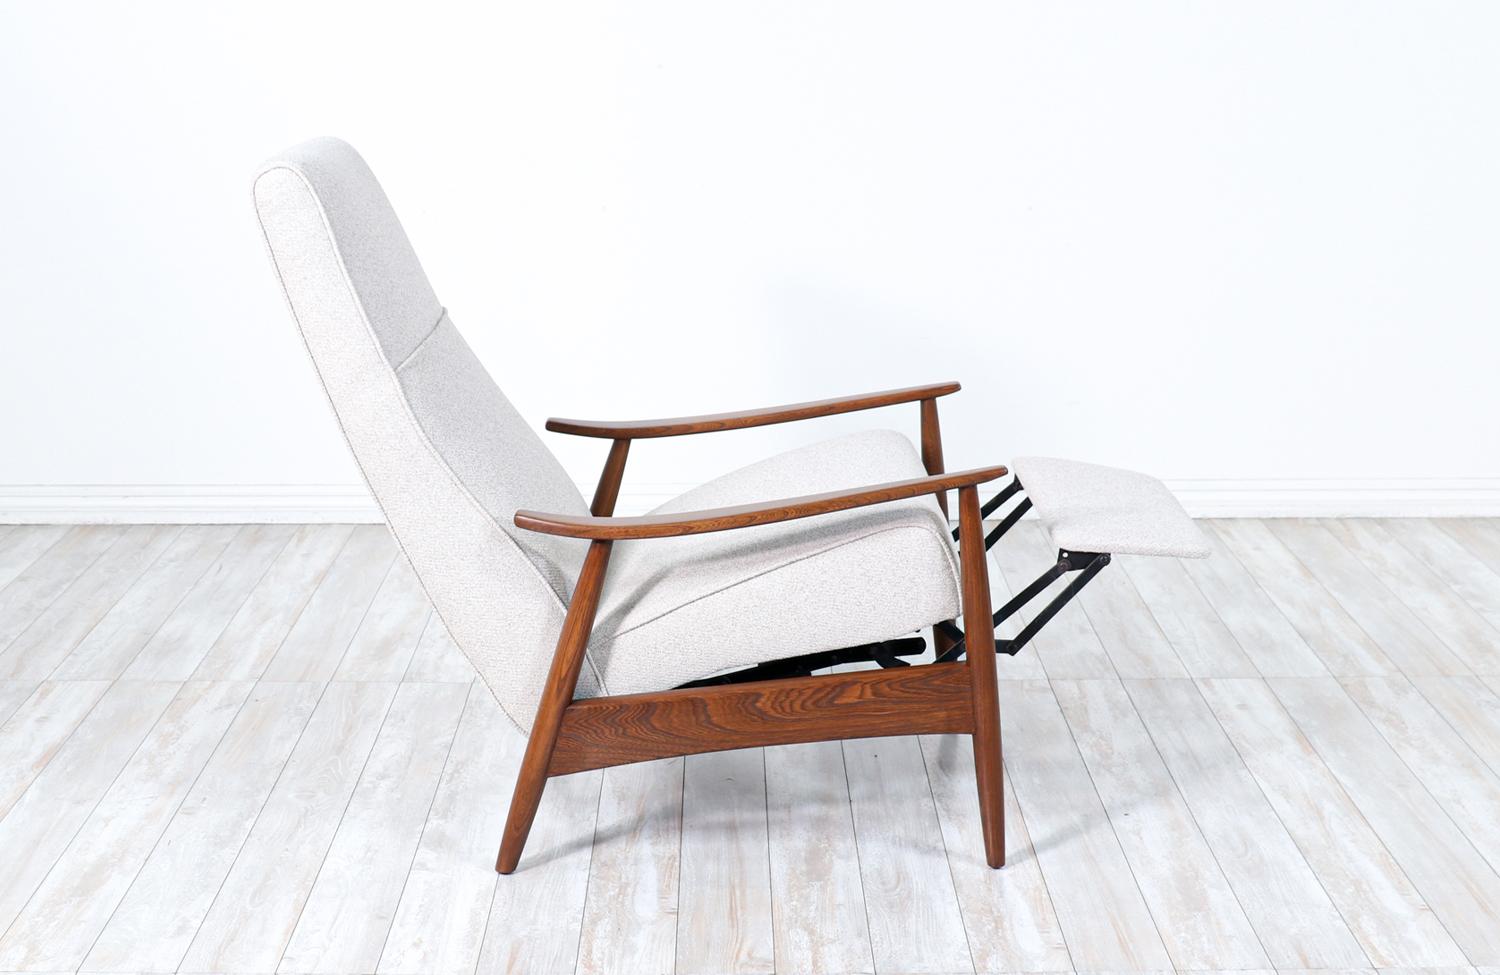 Eleganter Lehnstuhl, entworfen von Milo Baughman für James Inc. in den Vereinigten Staaten um 1950. Dieser bequeme Mid-Century Modern-Sessel verfügt über eine neu gepolsterte Sitzfläche aus weichem Tweed-Wollgemisch, die von einem warmen